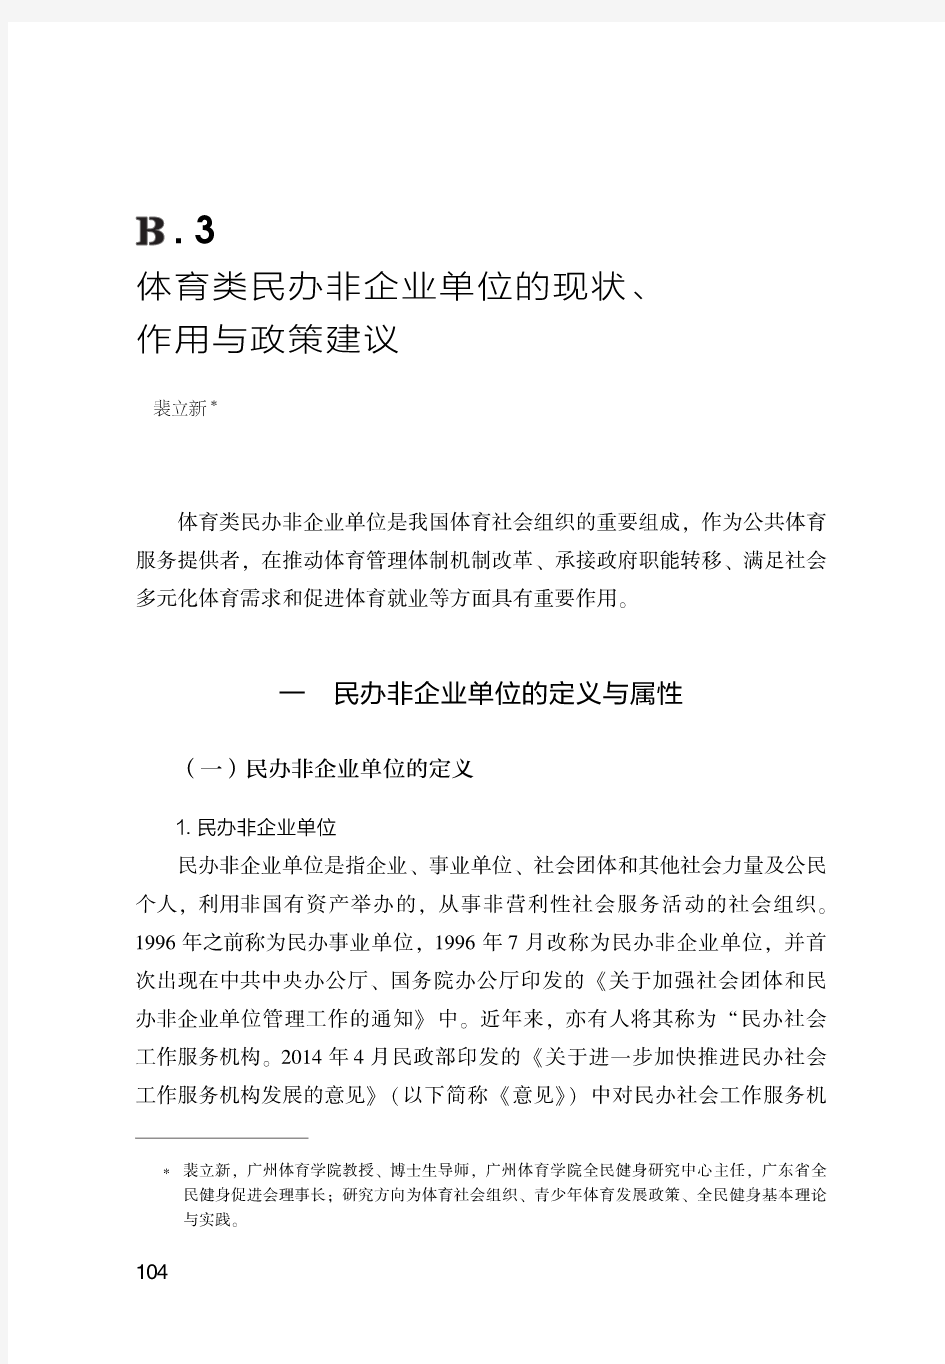 中国体育社会组织发展报告(2016)-体育类民办非企业单位的现状、作用与政策建议